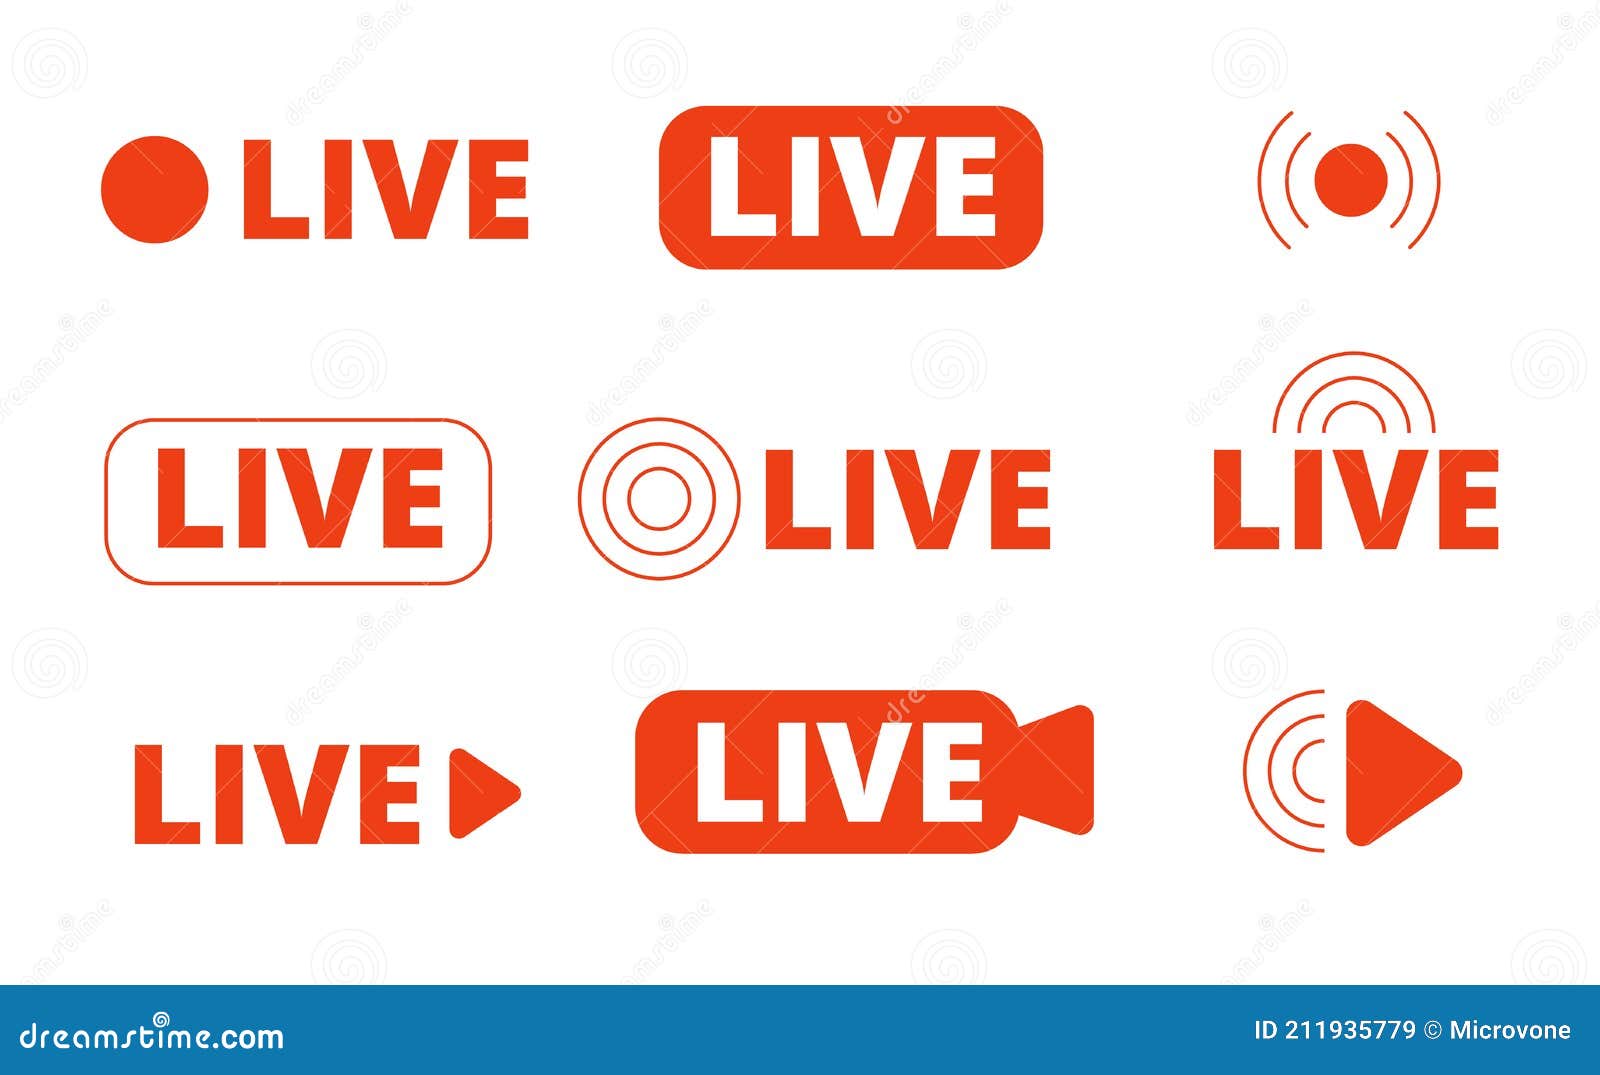 live broadcast logo